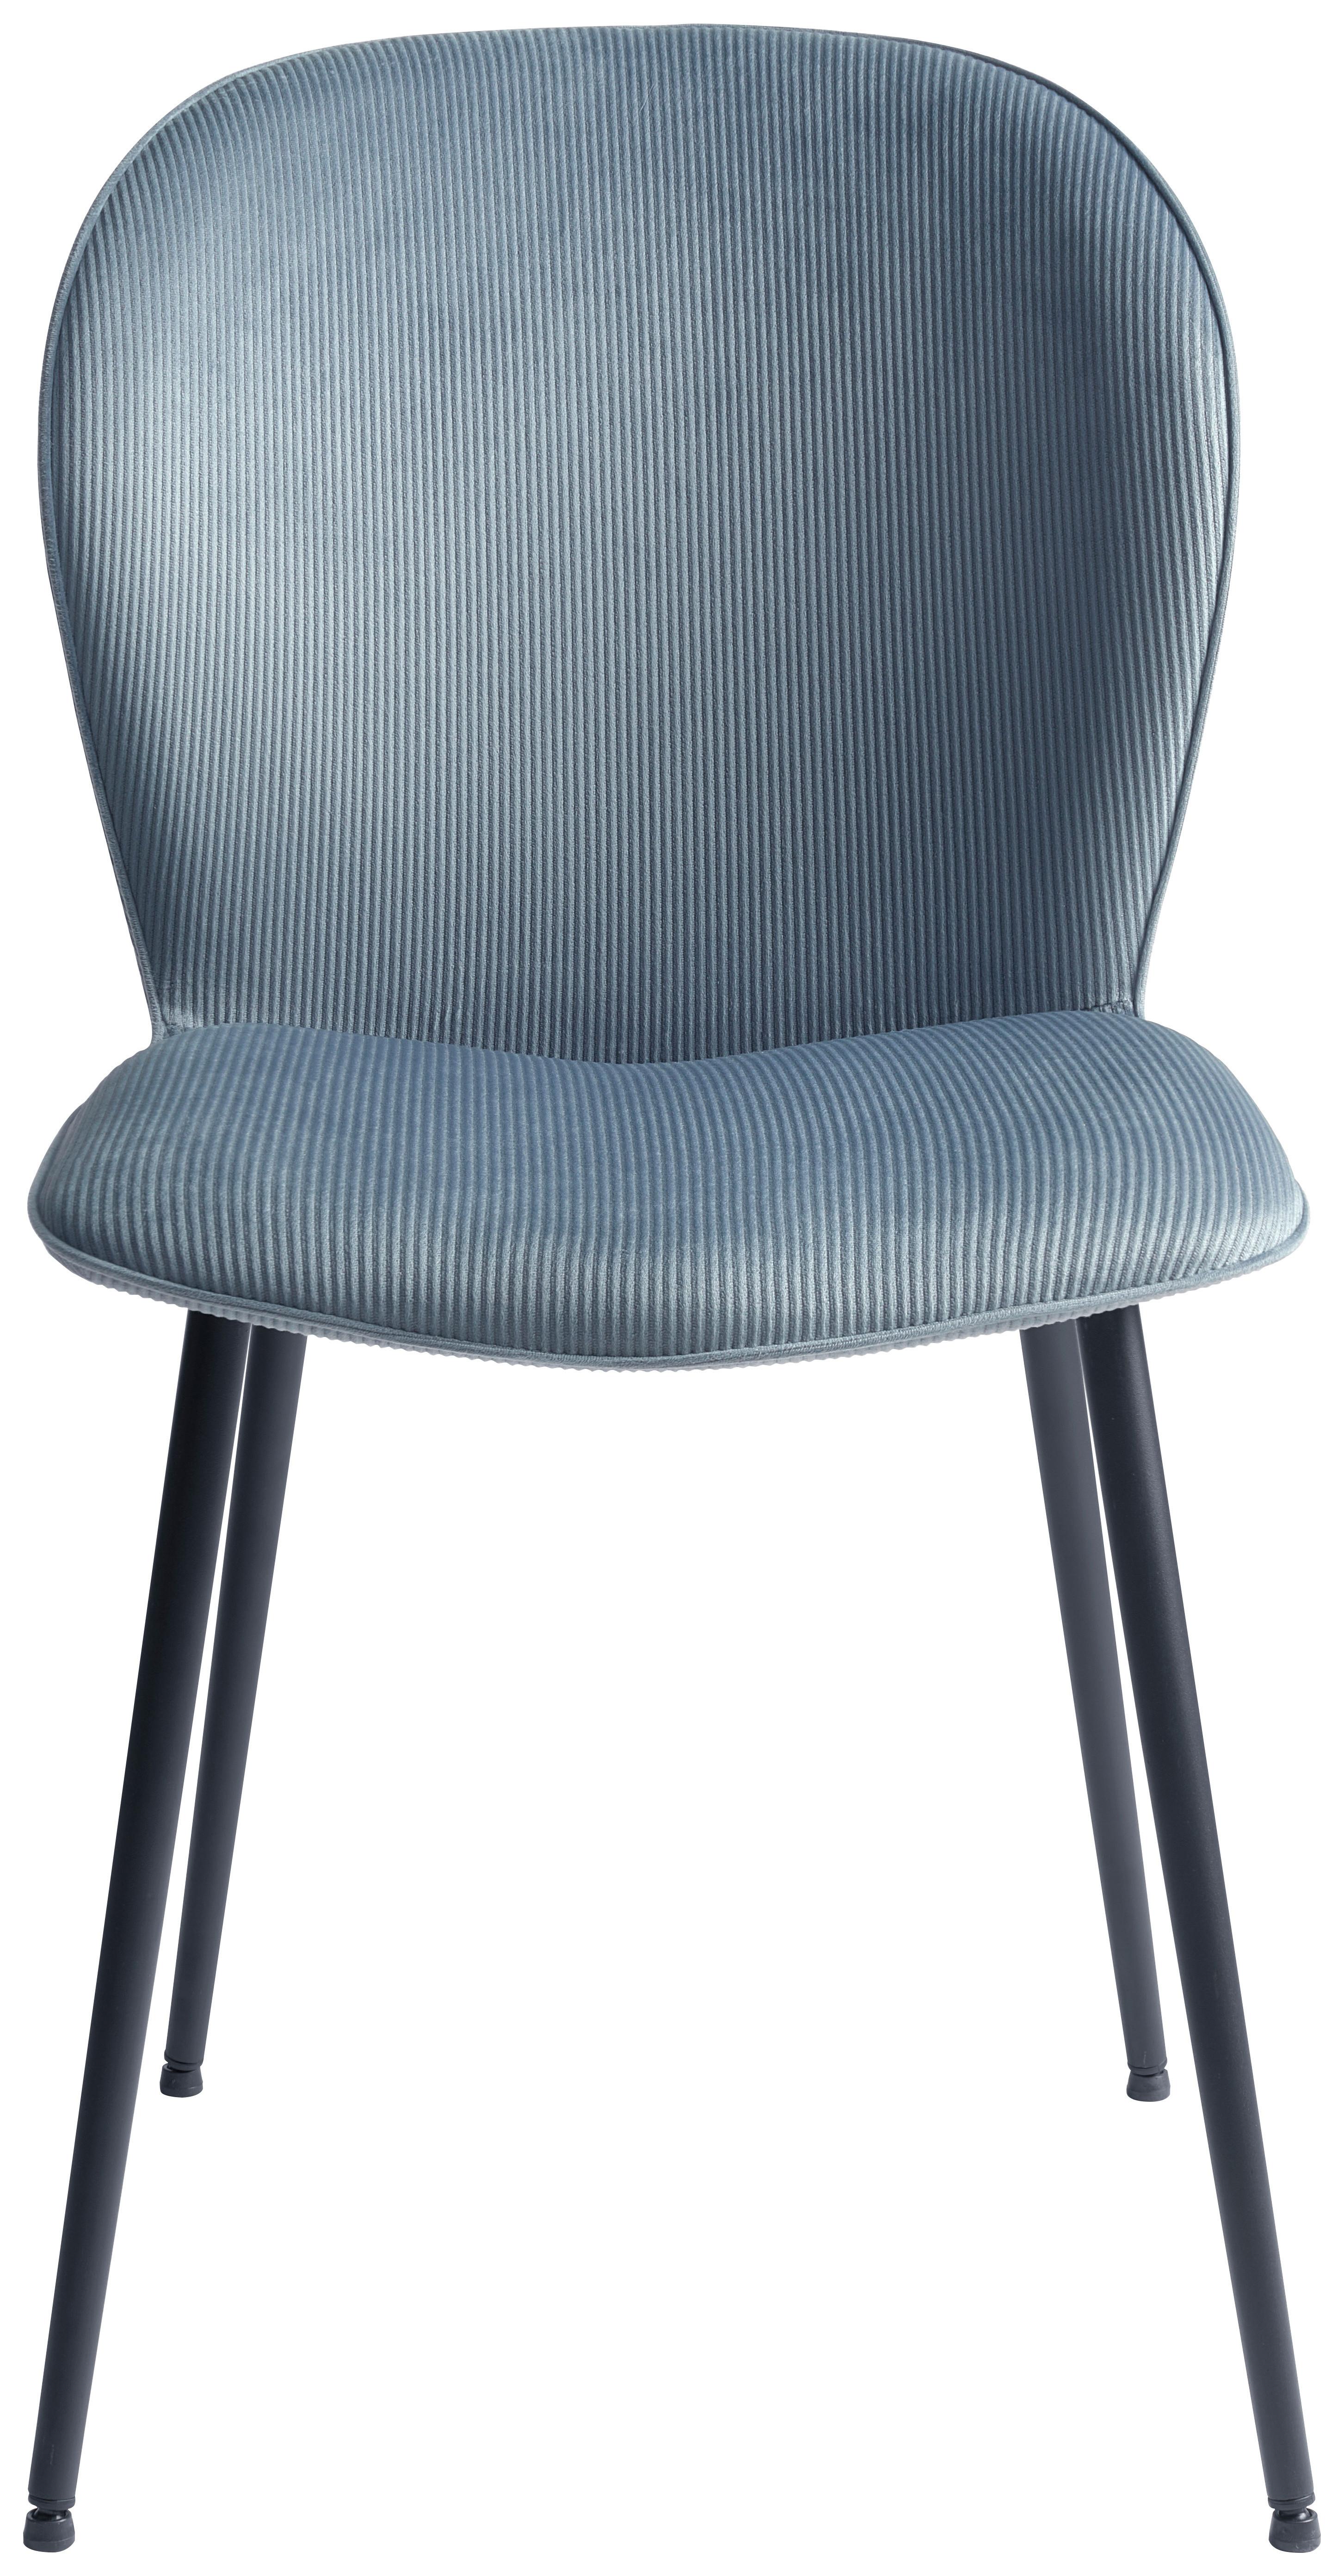 Čtyřnohá Židle Birgit - šedá/černá, Moderní, kov/textil (43/82,5/56,5cm)